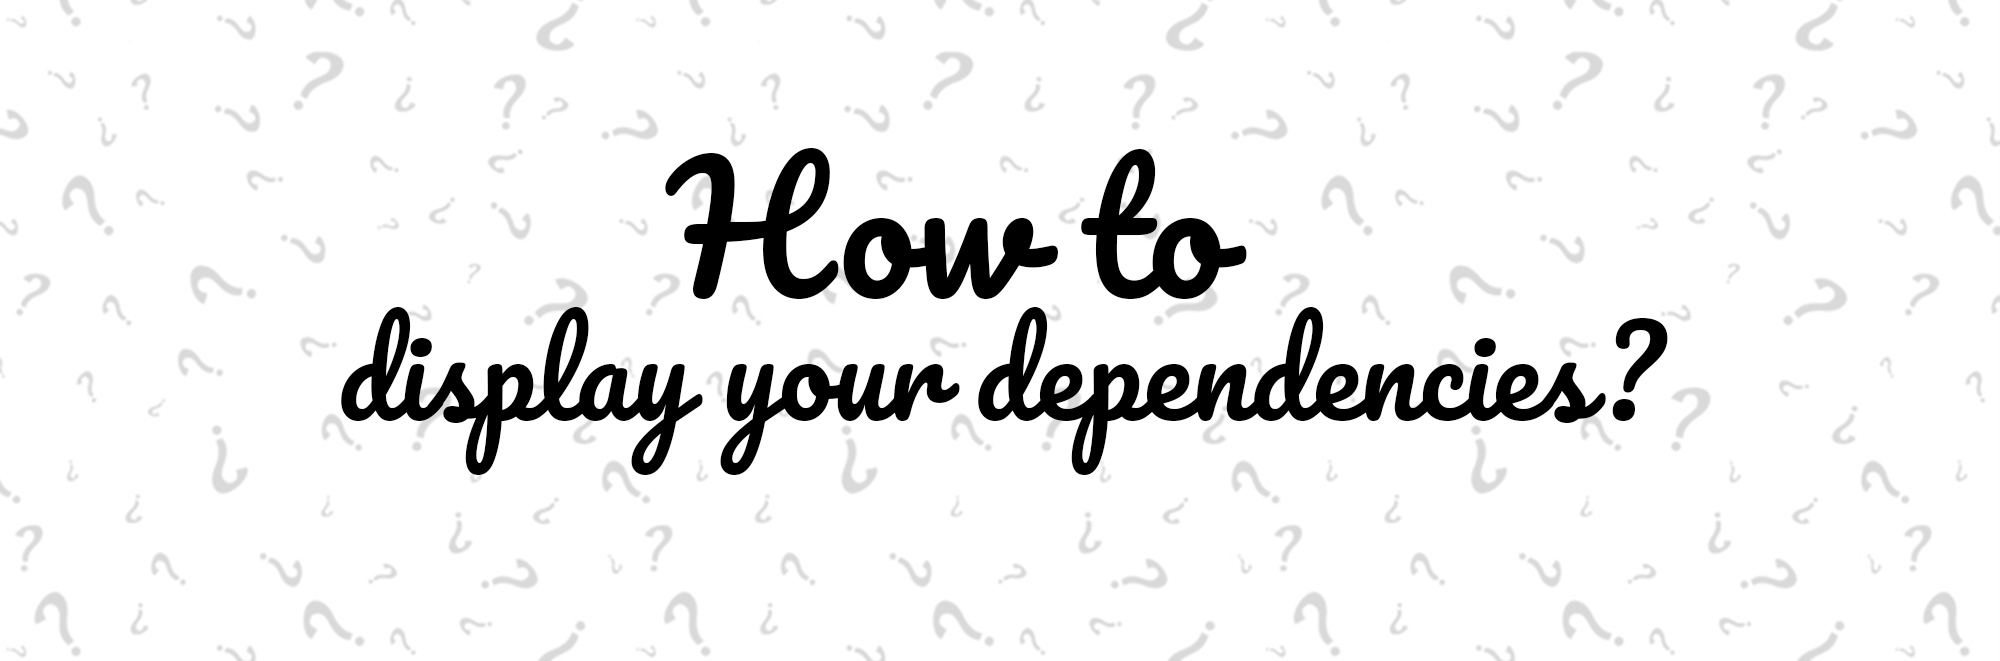 How To Display Your Dependencies?